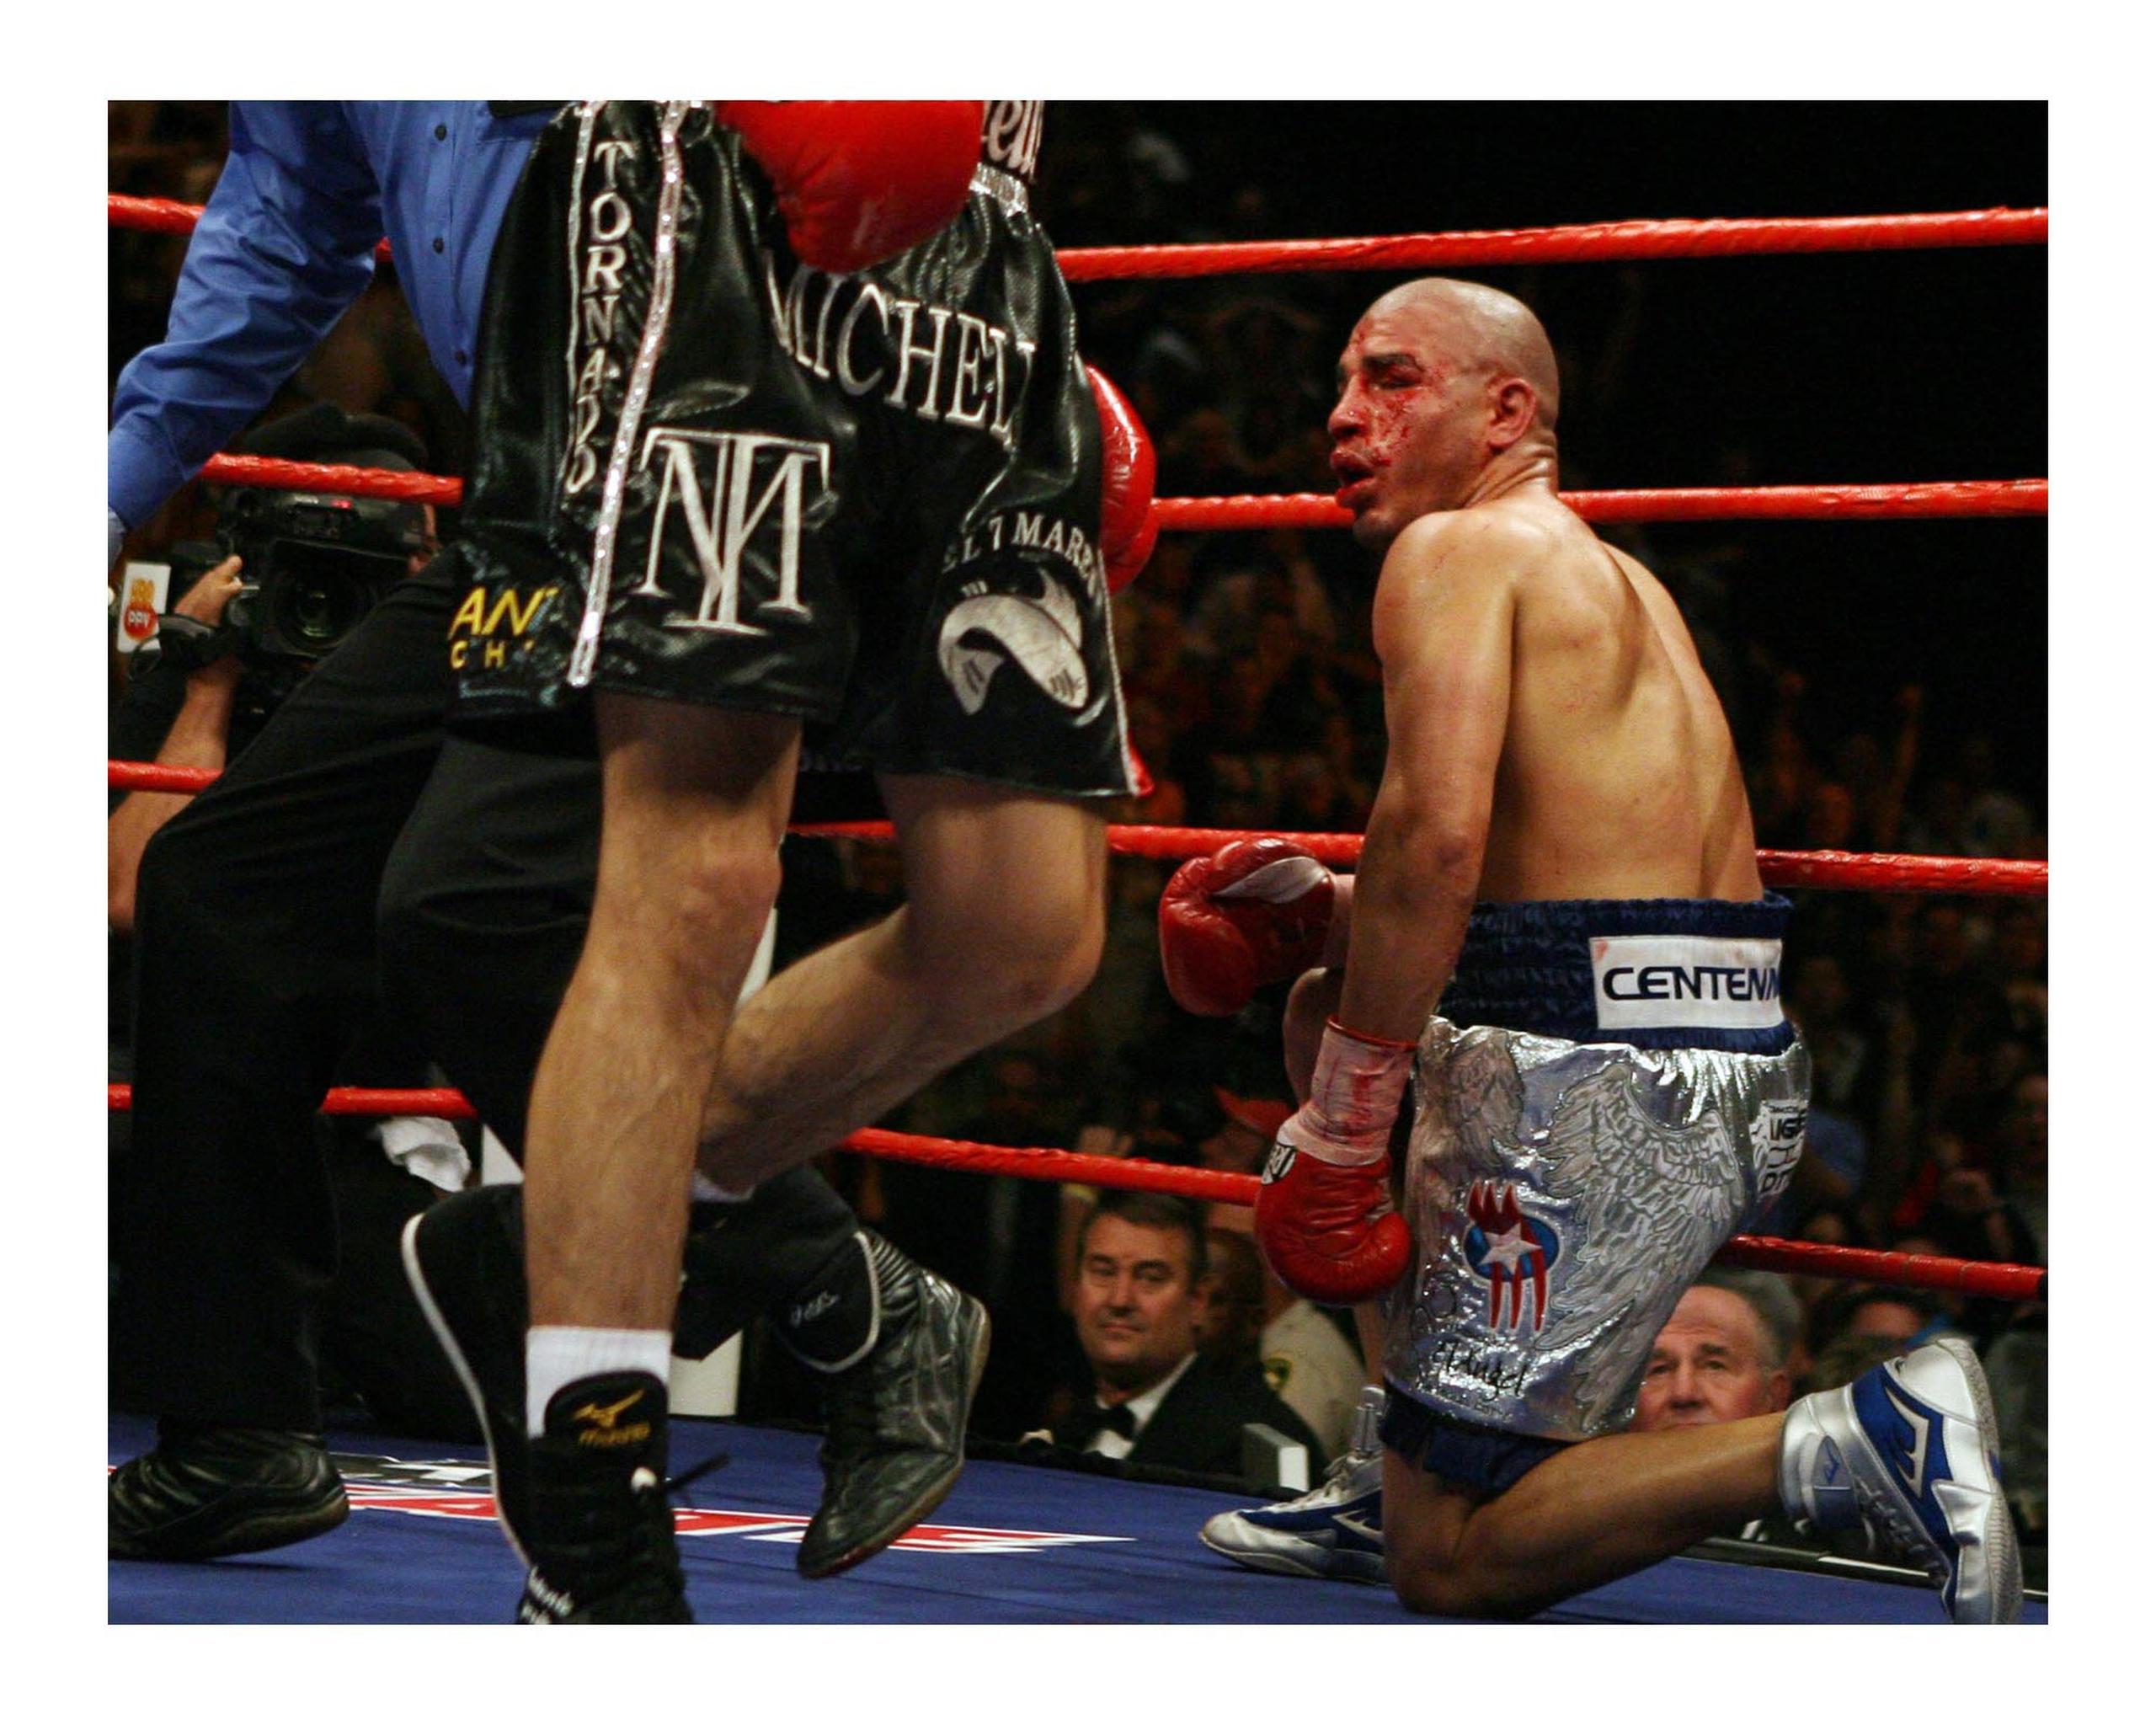 Miguel Cotto recibió uno de los más duros castigos de su carrera ante Antonio Margarito en su combate del 26 de julio de 2008. Aún así resistió combate hasta el undécimo asalto.

